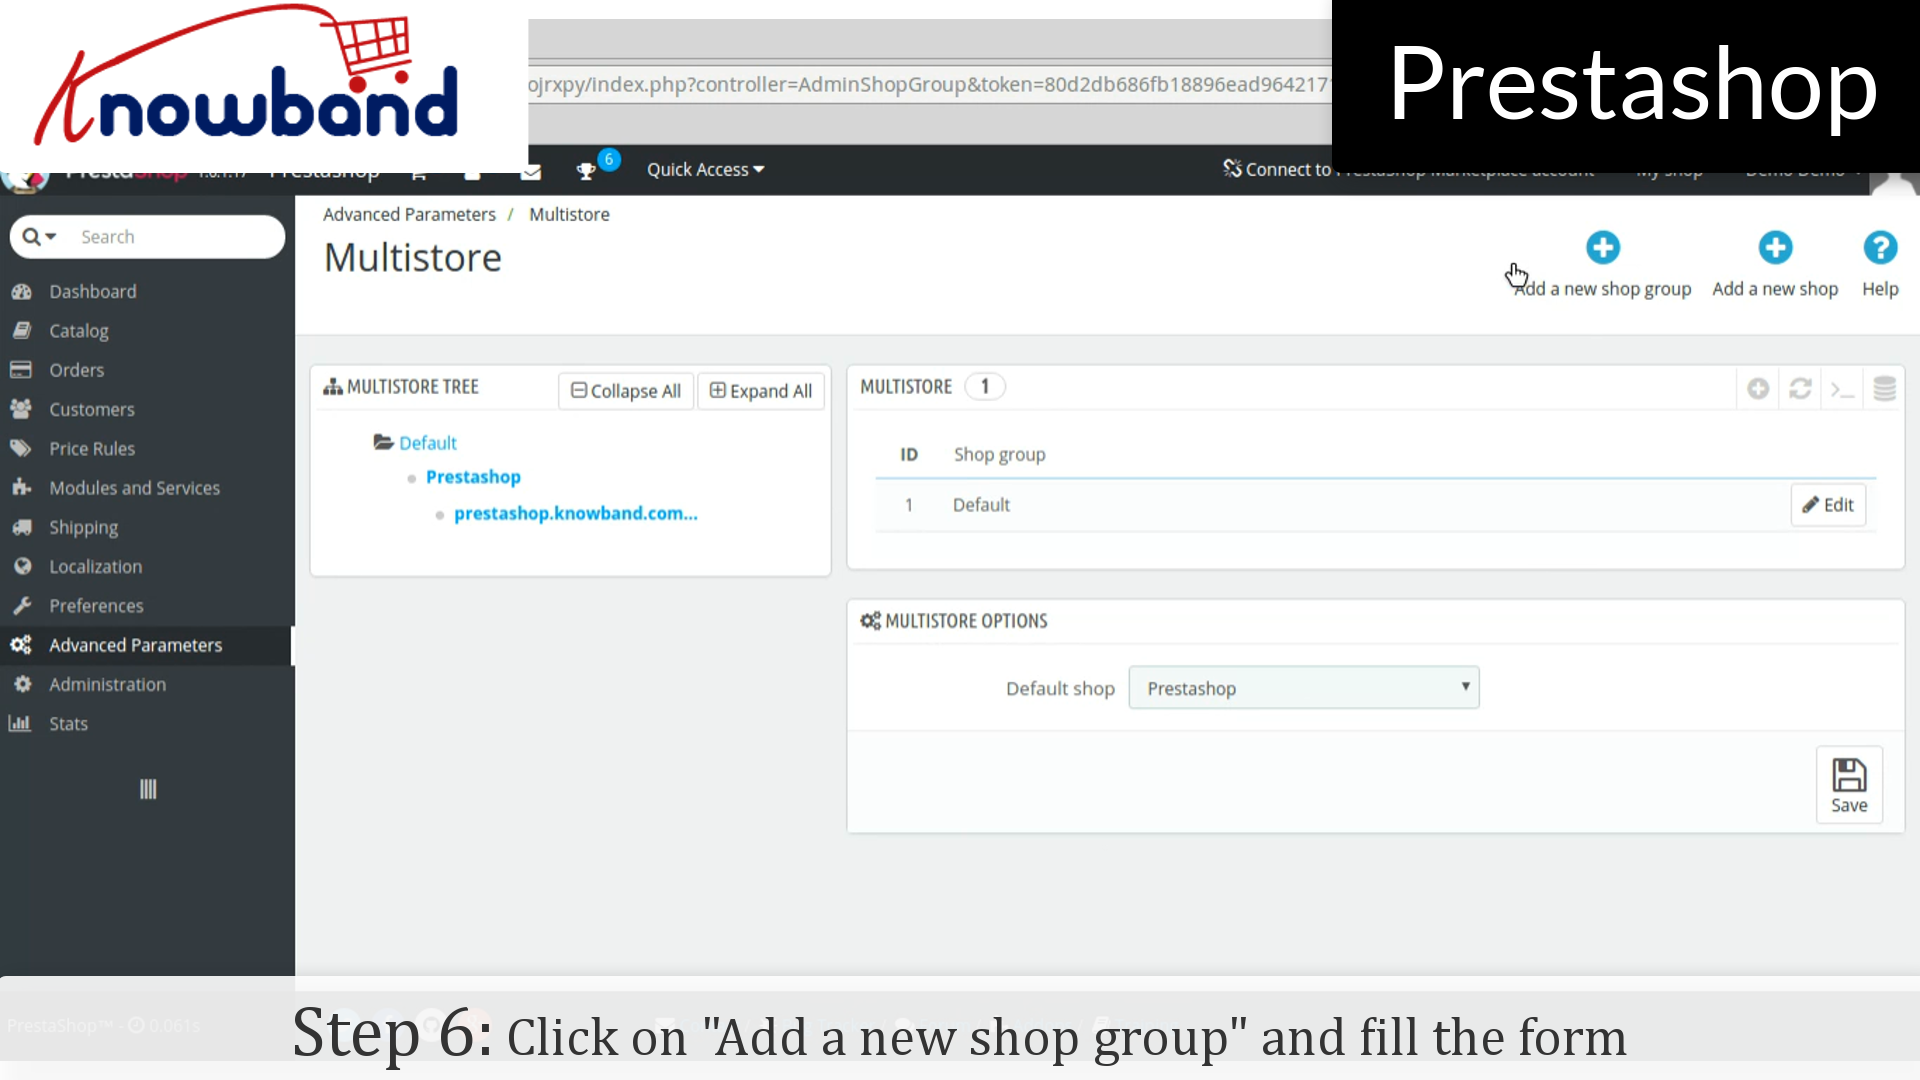 Dodaj nowy sklep | Dashboard demonstracyjny Knowband